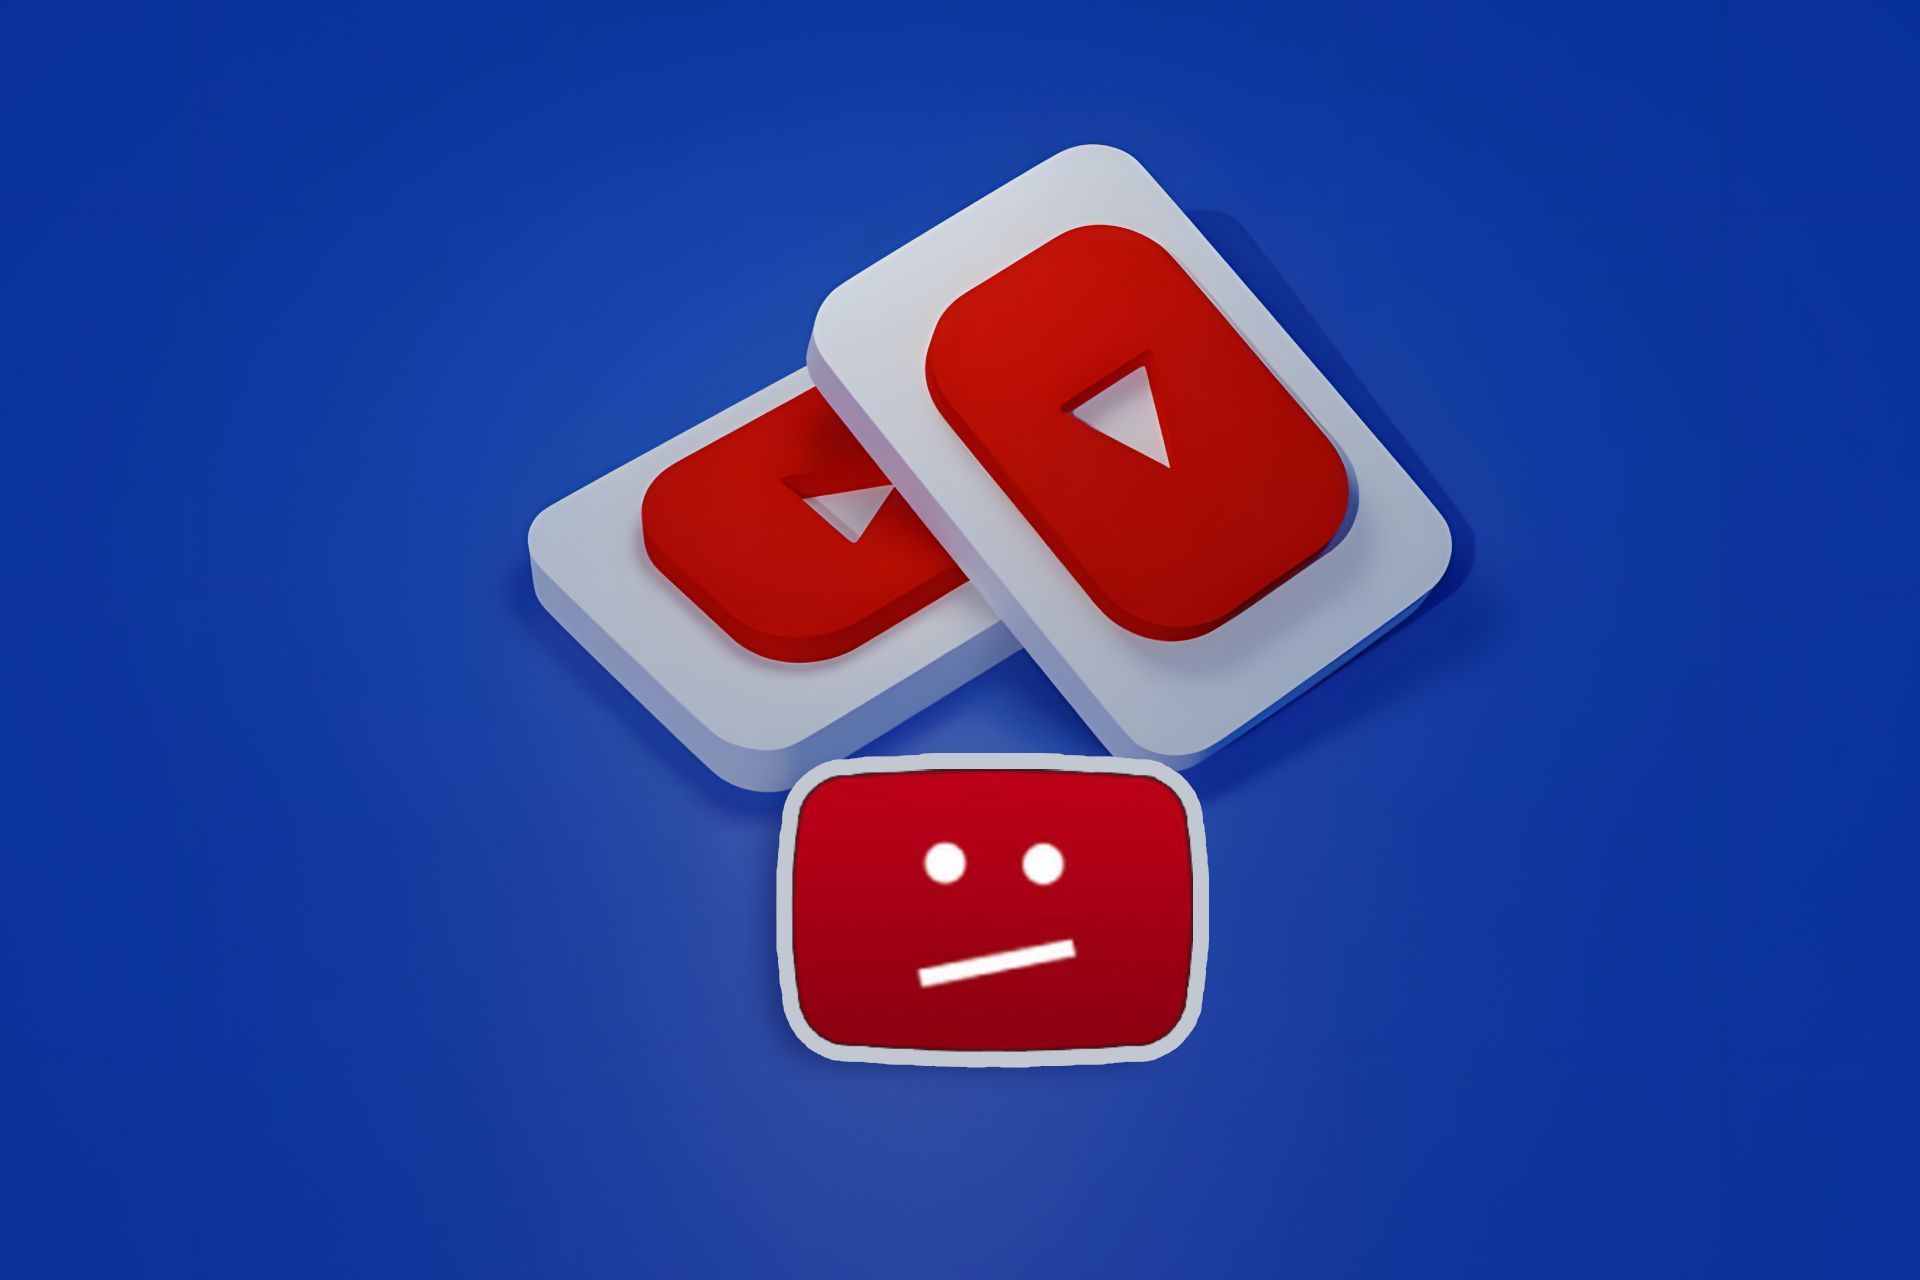 لوگو یوتیوب و آیکون استرایک وسط زمینه آبی